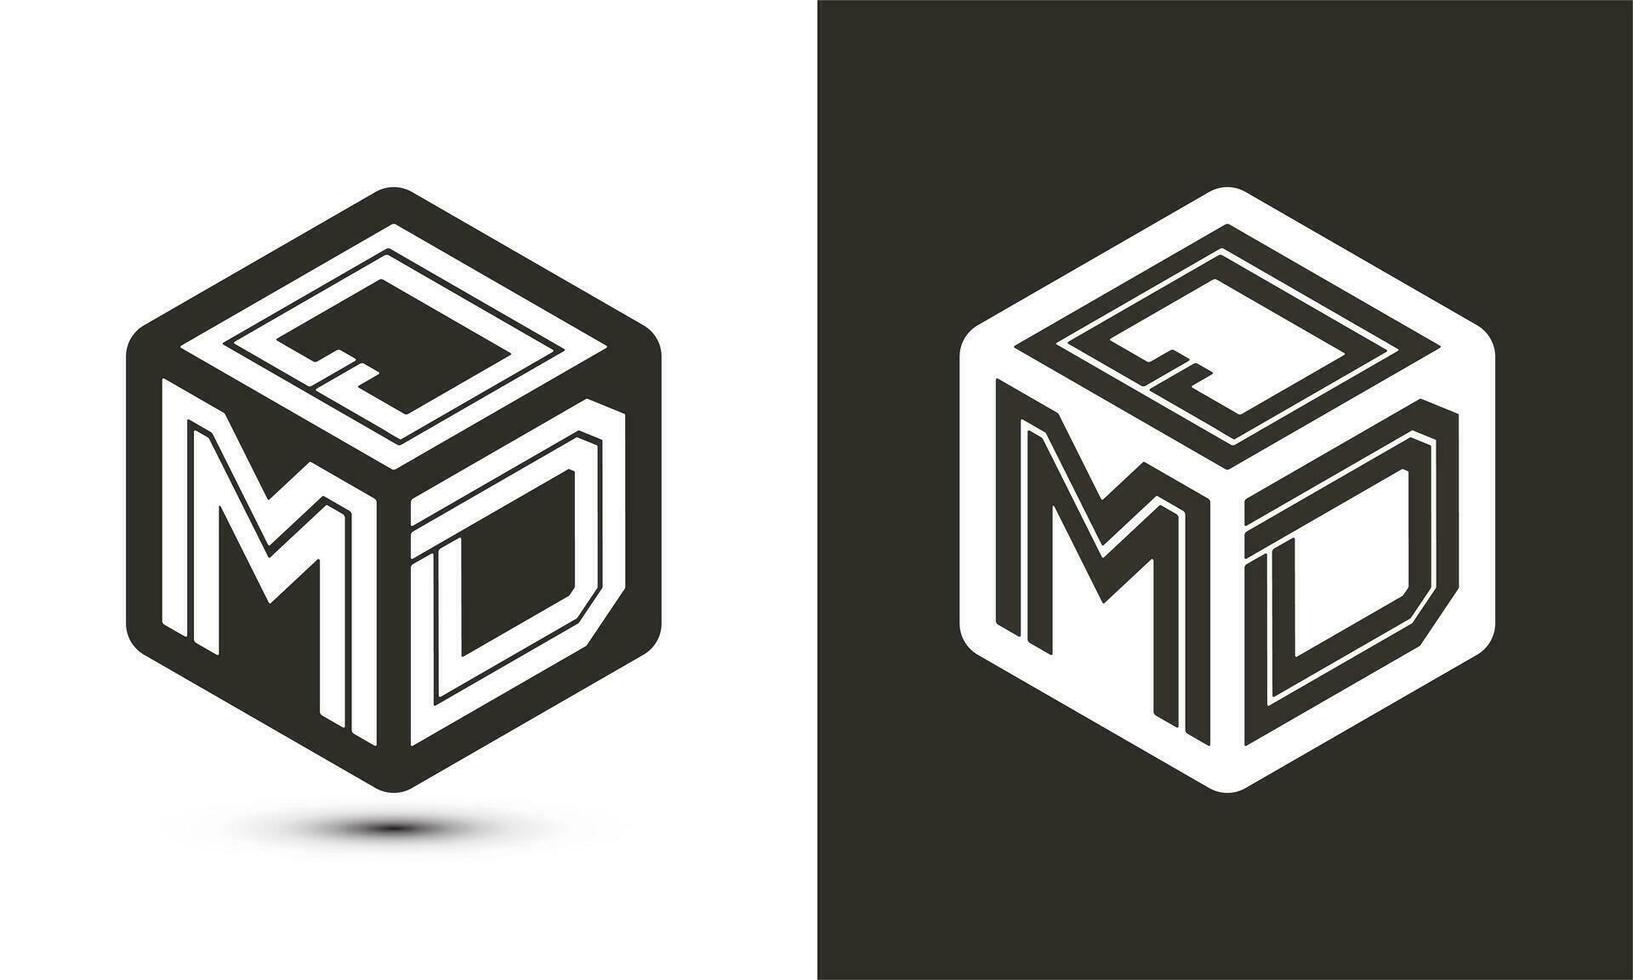 qmd brief logo ontwerp met illustrator kubus logo, vector logo modern alfabet doopvont overlappen stijl.